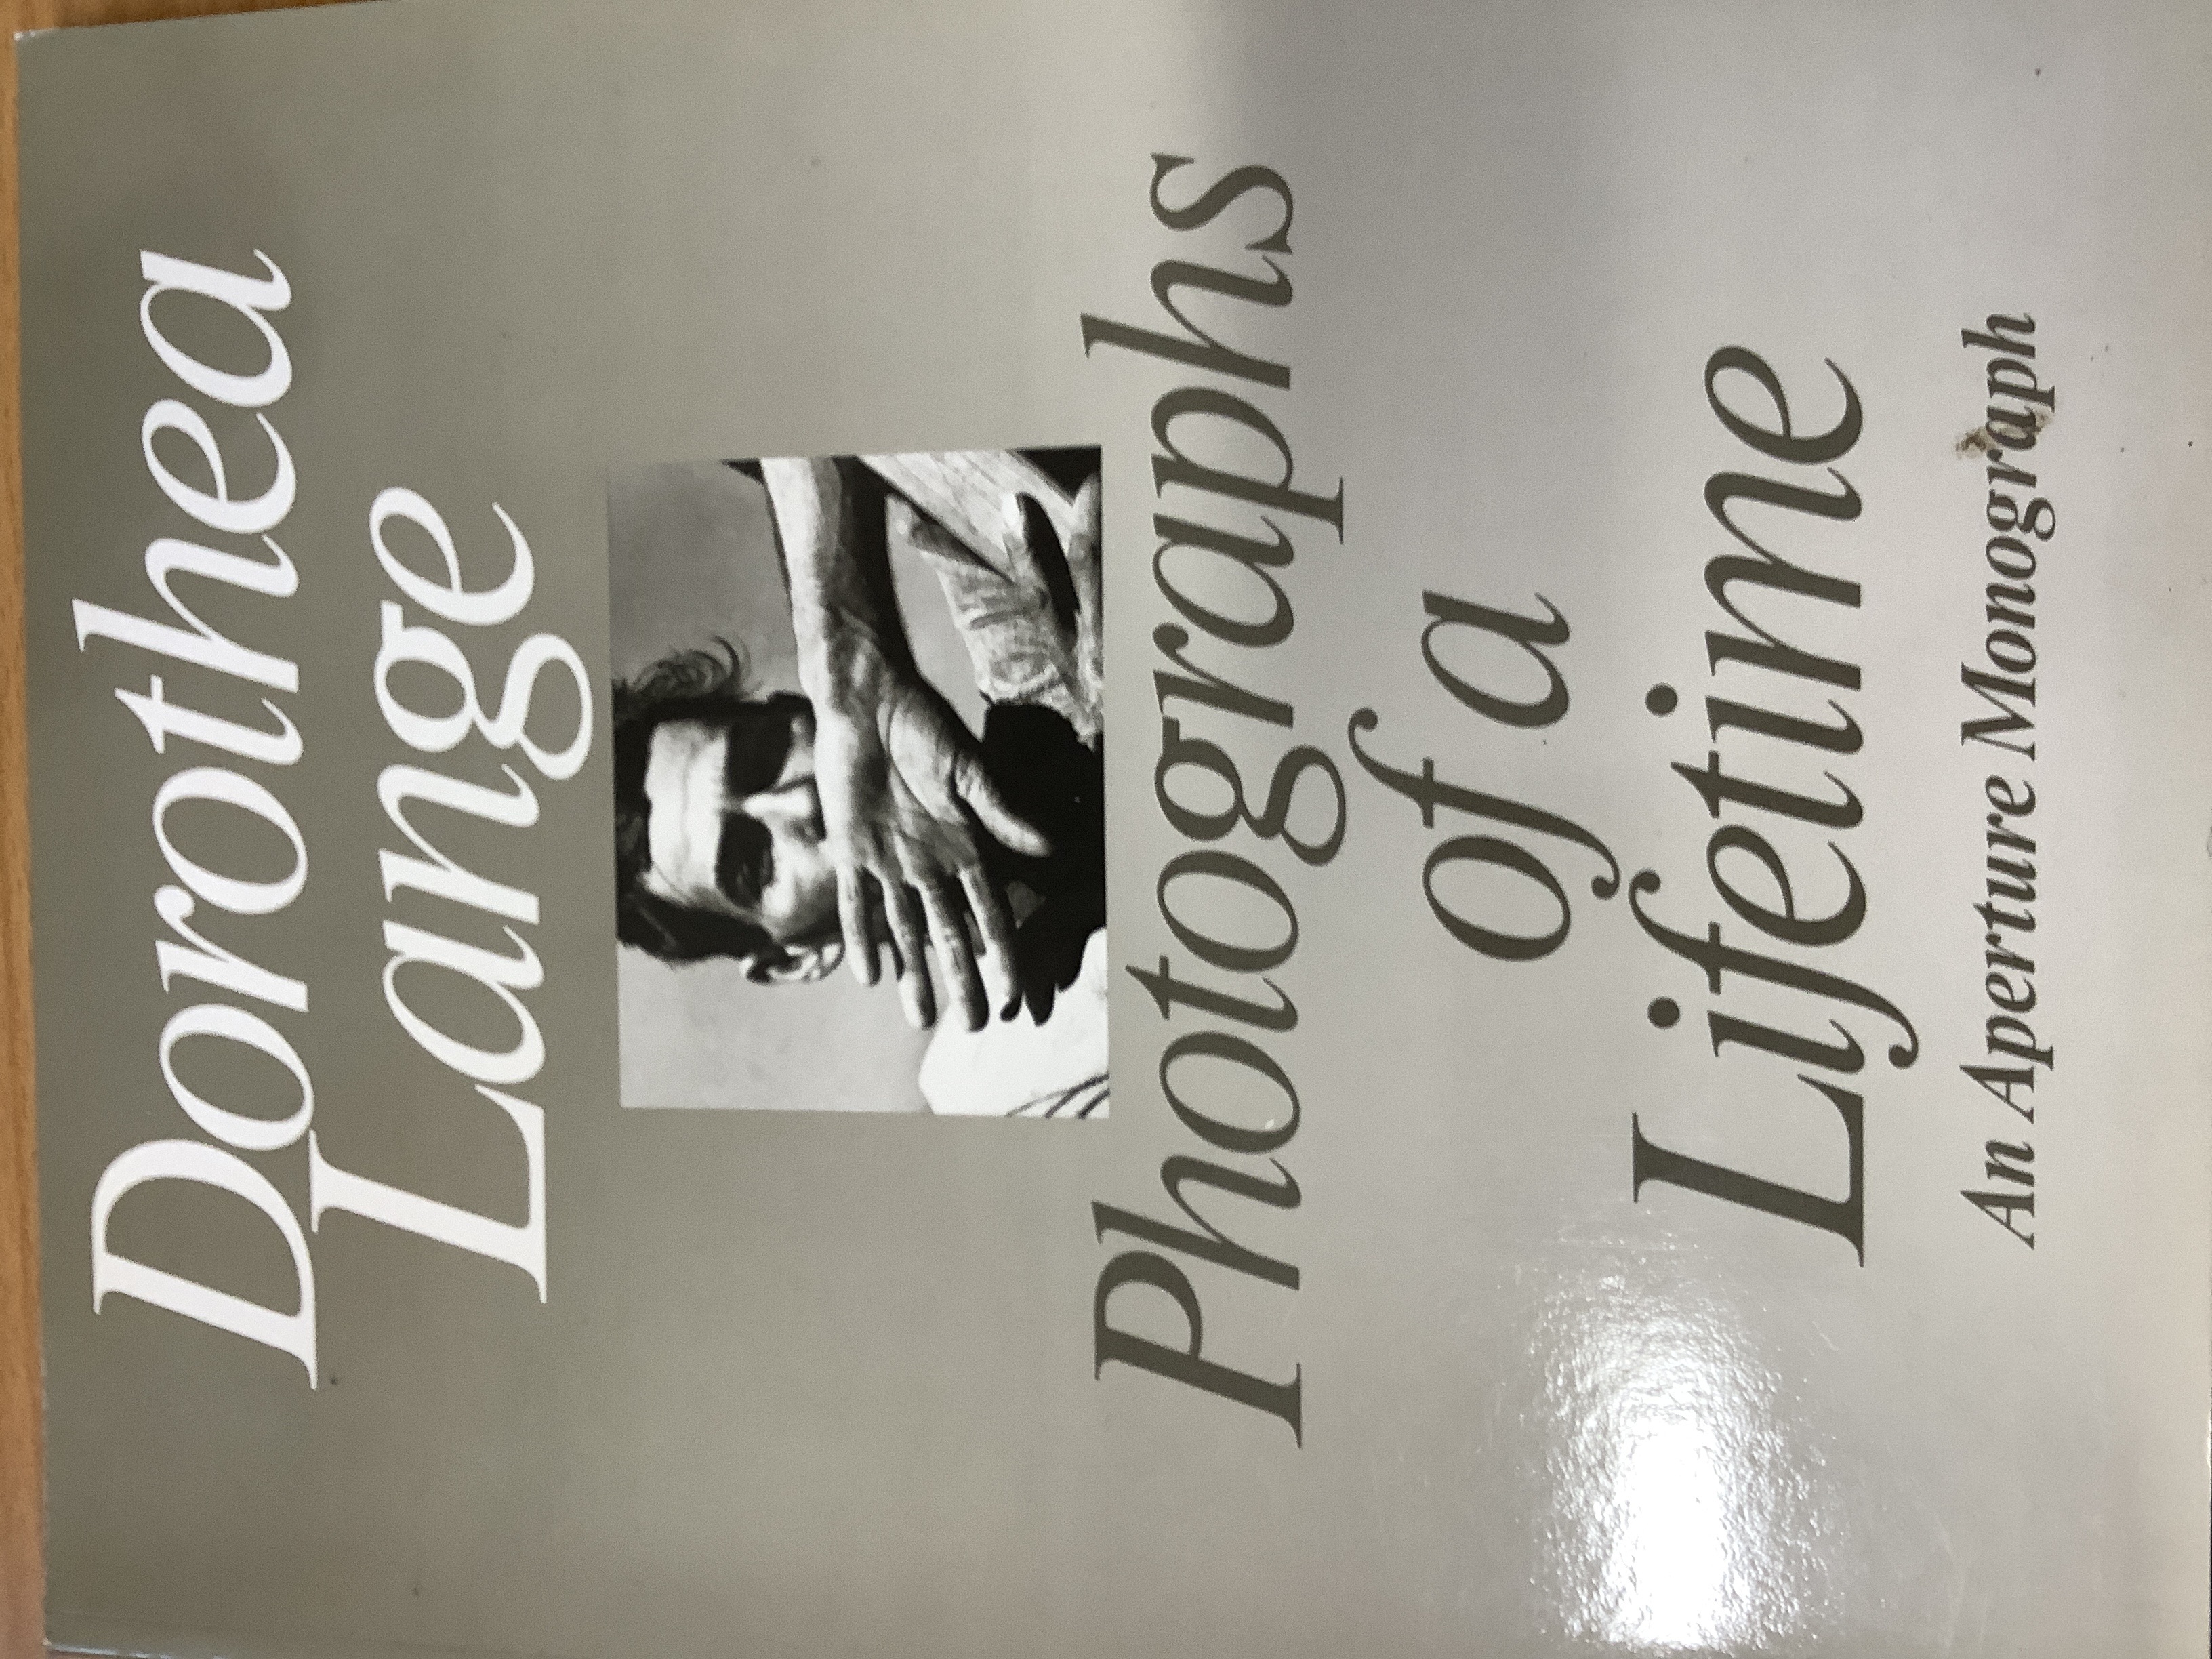 Dorothea Lange: Photographs Of A Lifetime: An Aperture Monograph - Coles, Robert